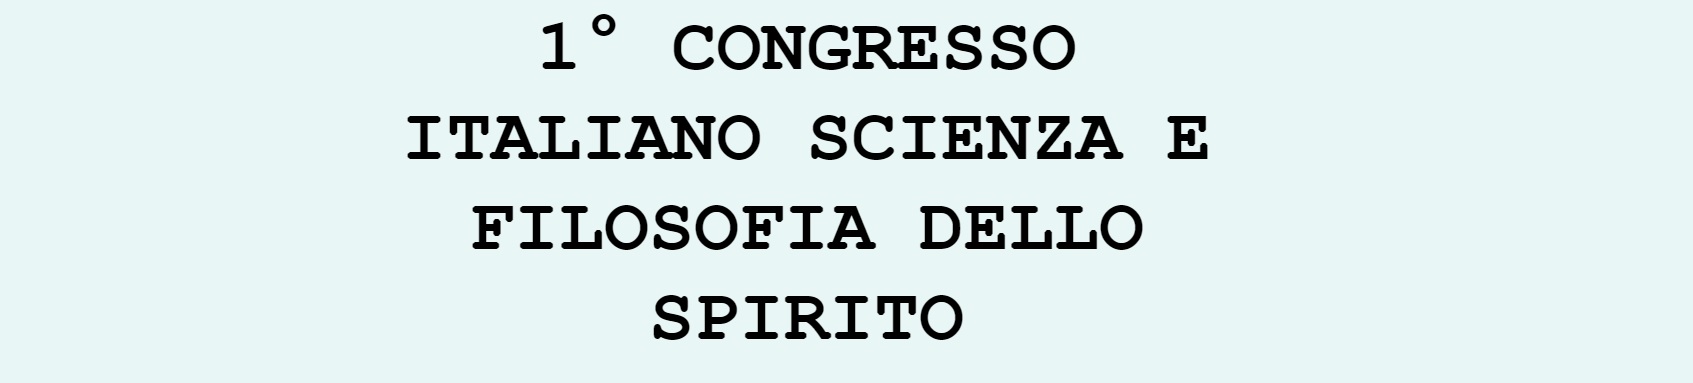 Il 1° Congresso Italiano Scienza e Filosofia dello Spirito a Milano